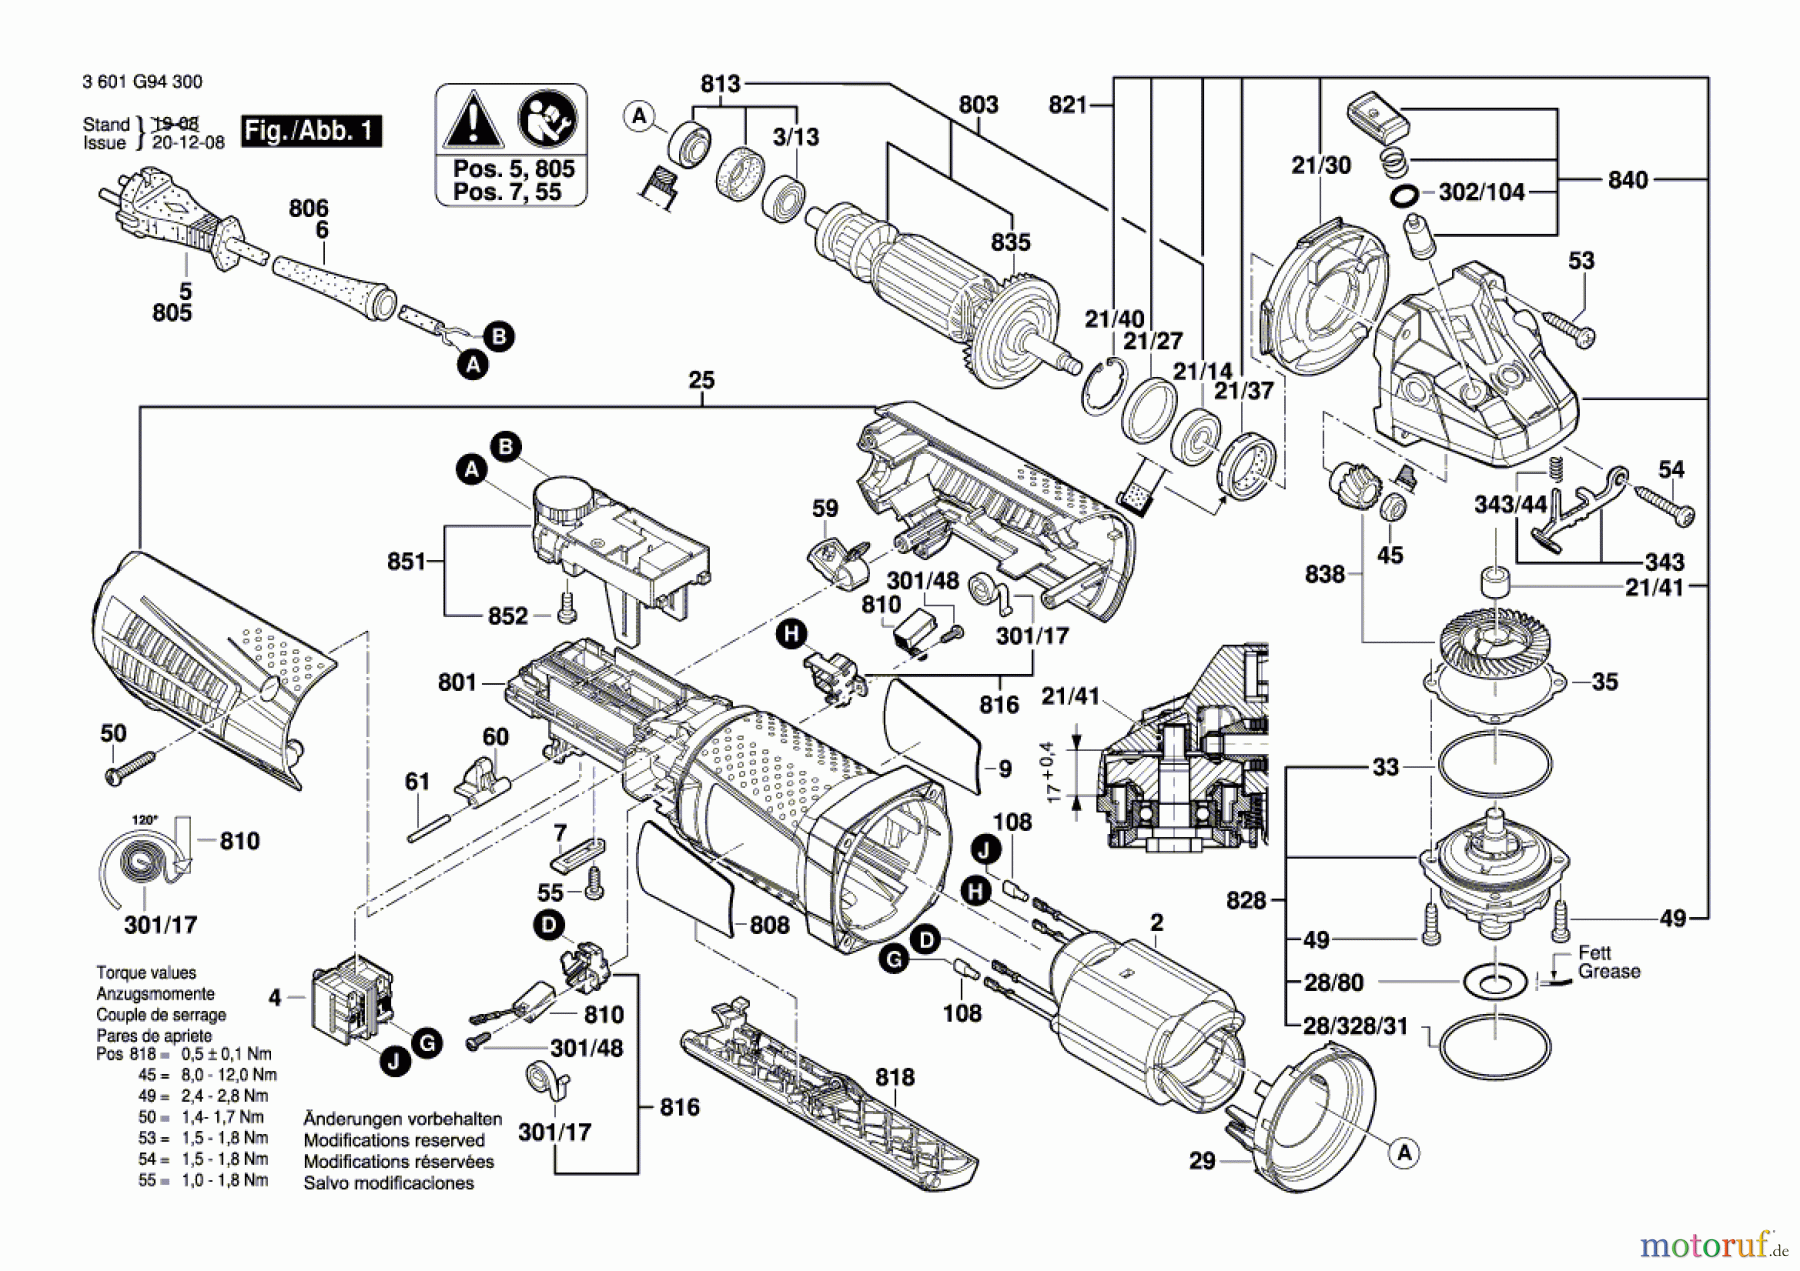  Bosch Werkzeug Winkelschleifer GWS 12-125 CIEPX Seite 1